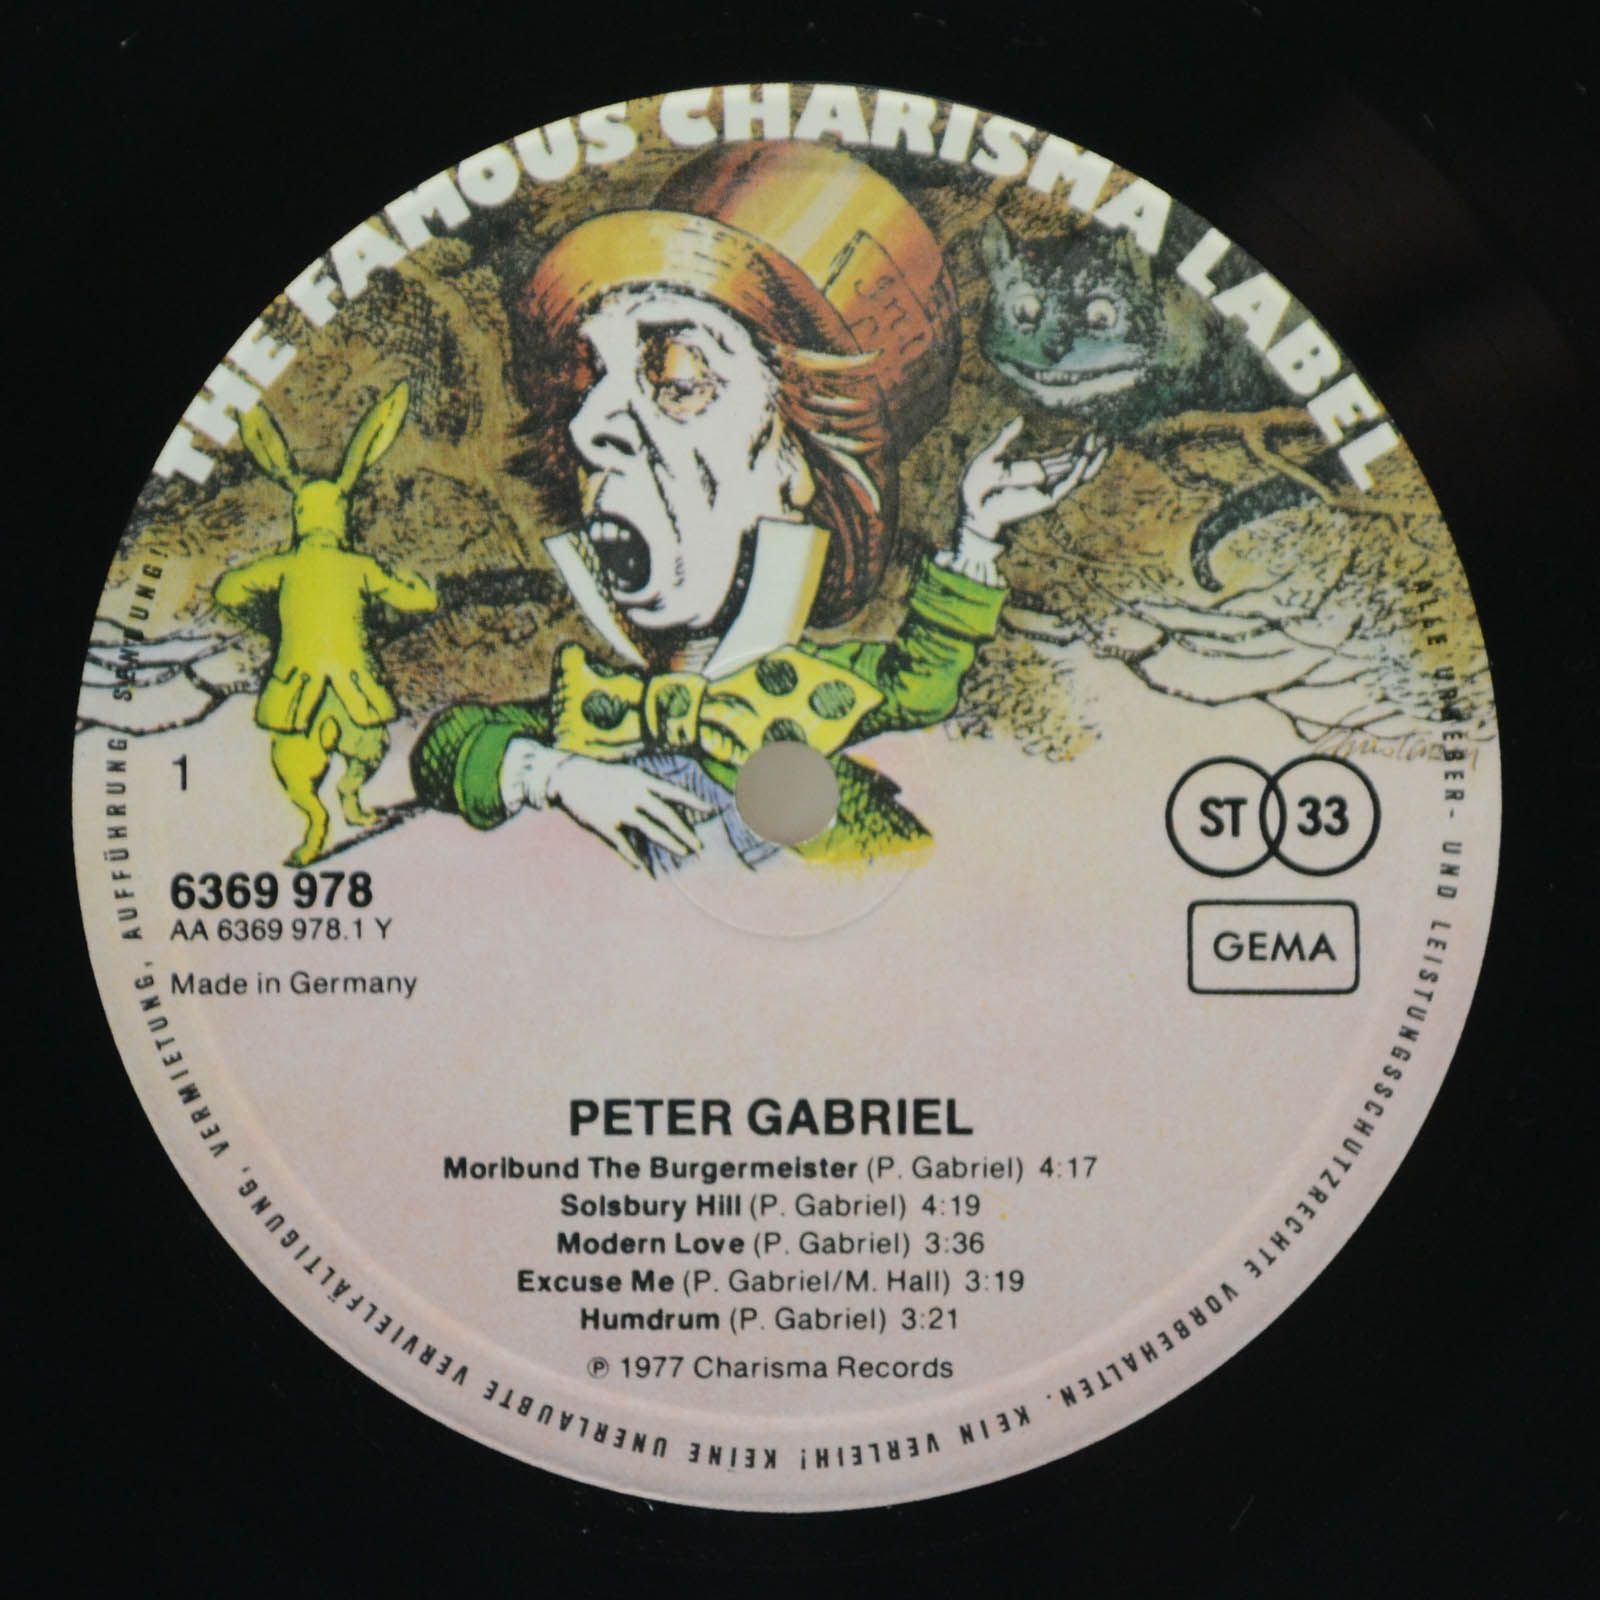 Peter Gabriel — Peter Gabriel, 1977